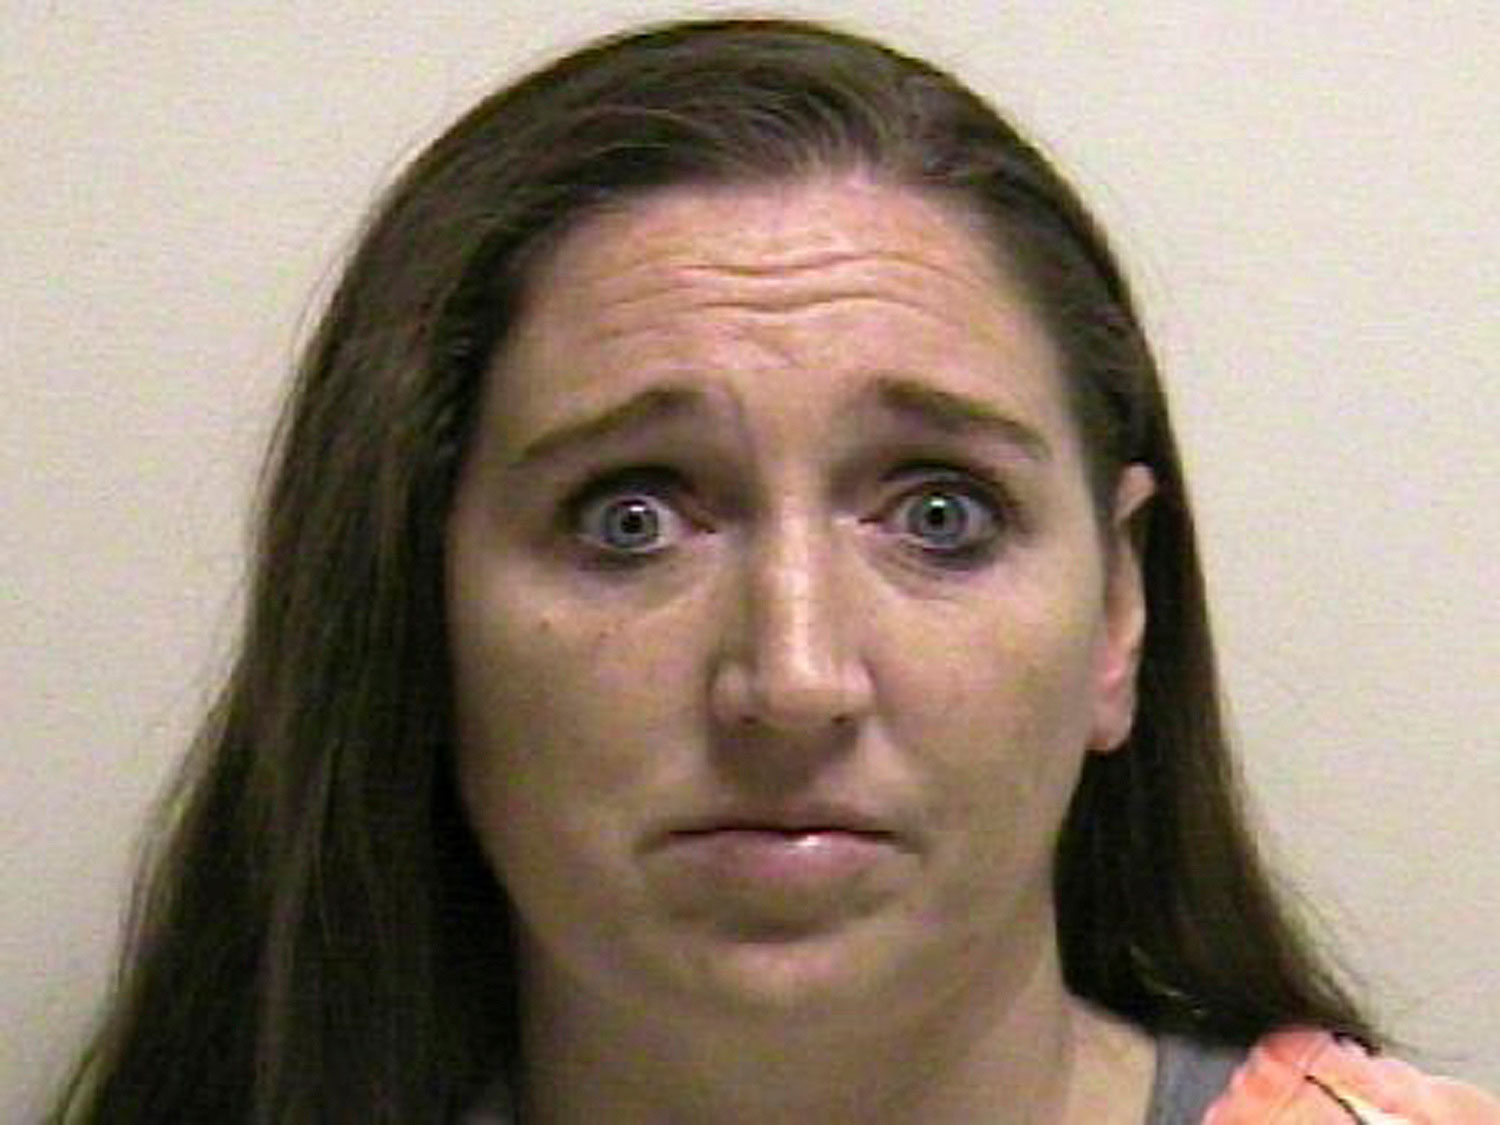 Megan Huntsman at Pleasant Grove County Jail in Pleasant Grove, Utah on April 13, 2014. (Pleasant Grove County Jail/Reuters)